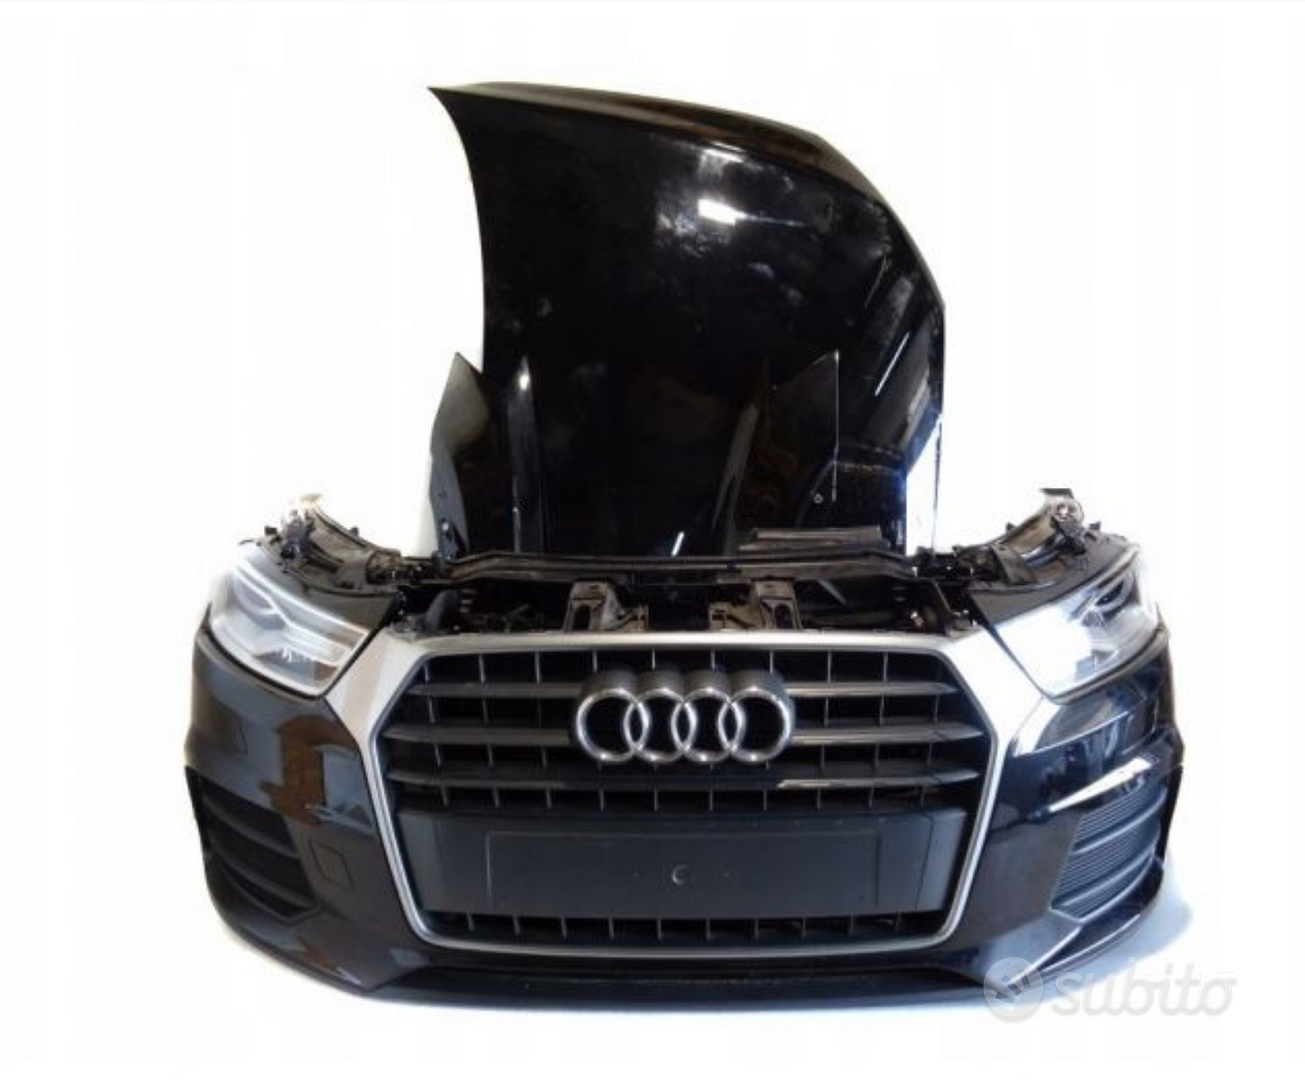 Musata ant kit airbag Audi Q3 2011/18 - Accessori Auto In vendita